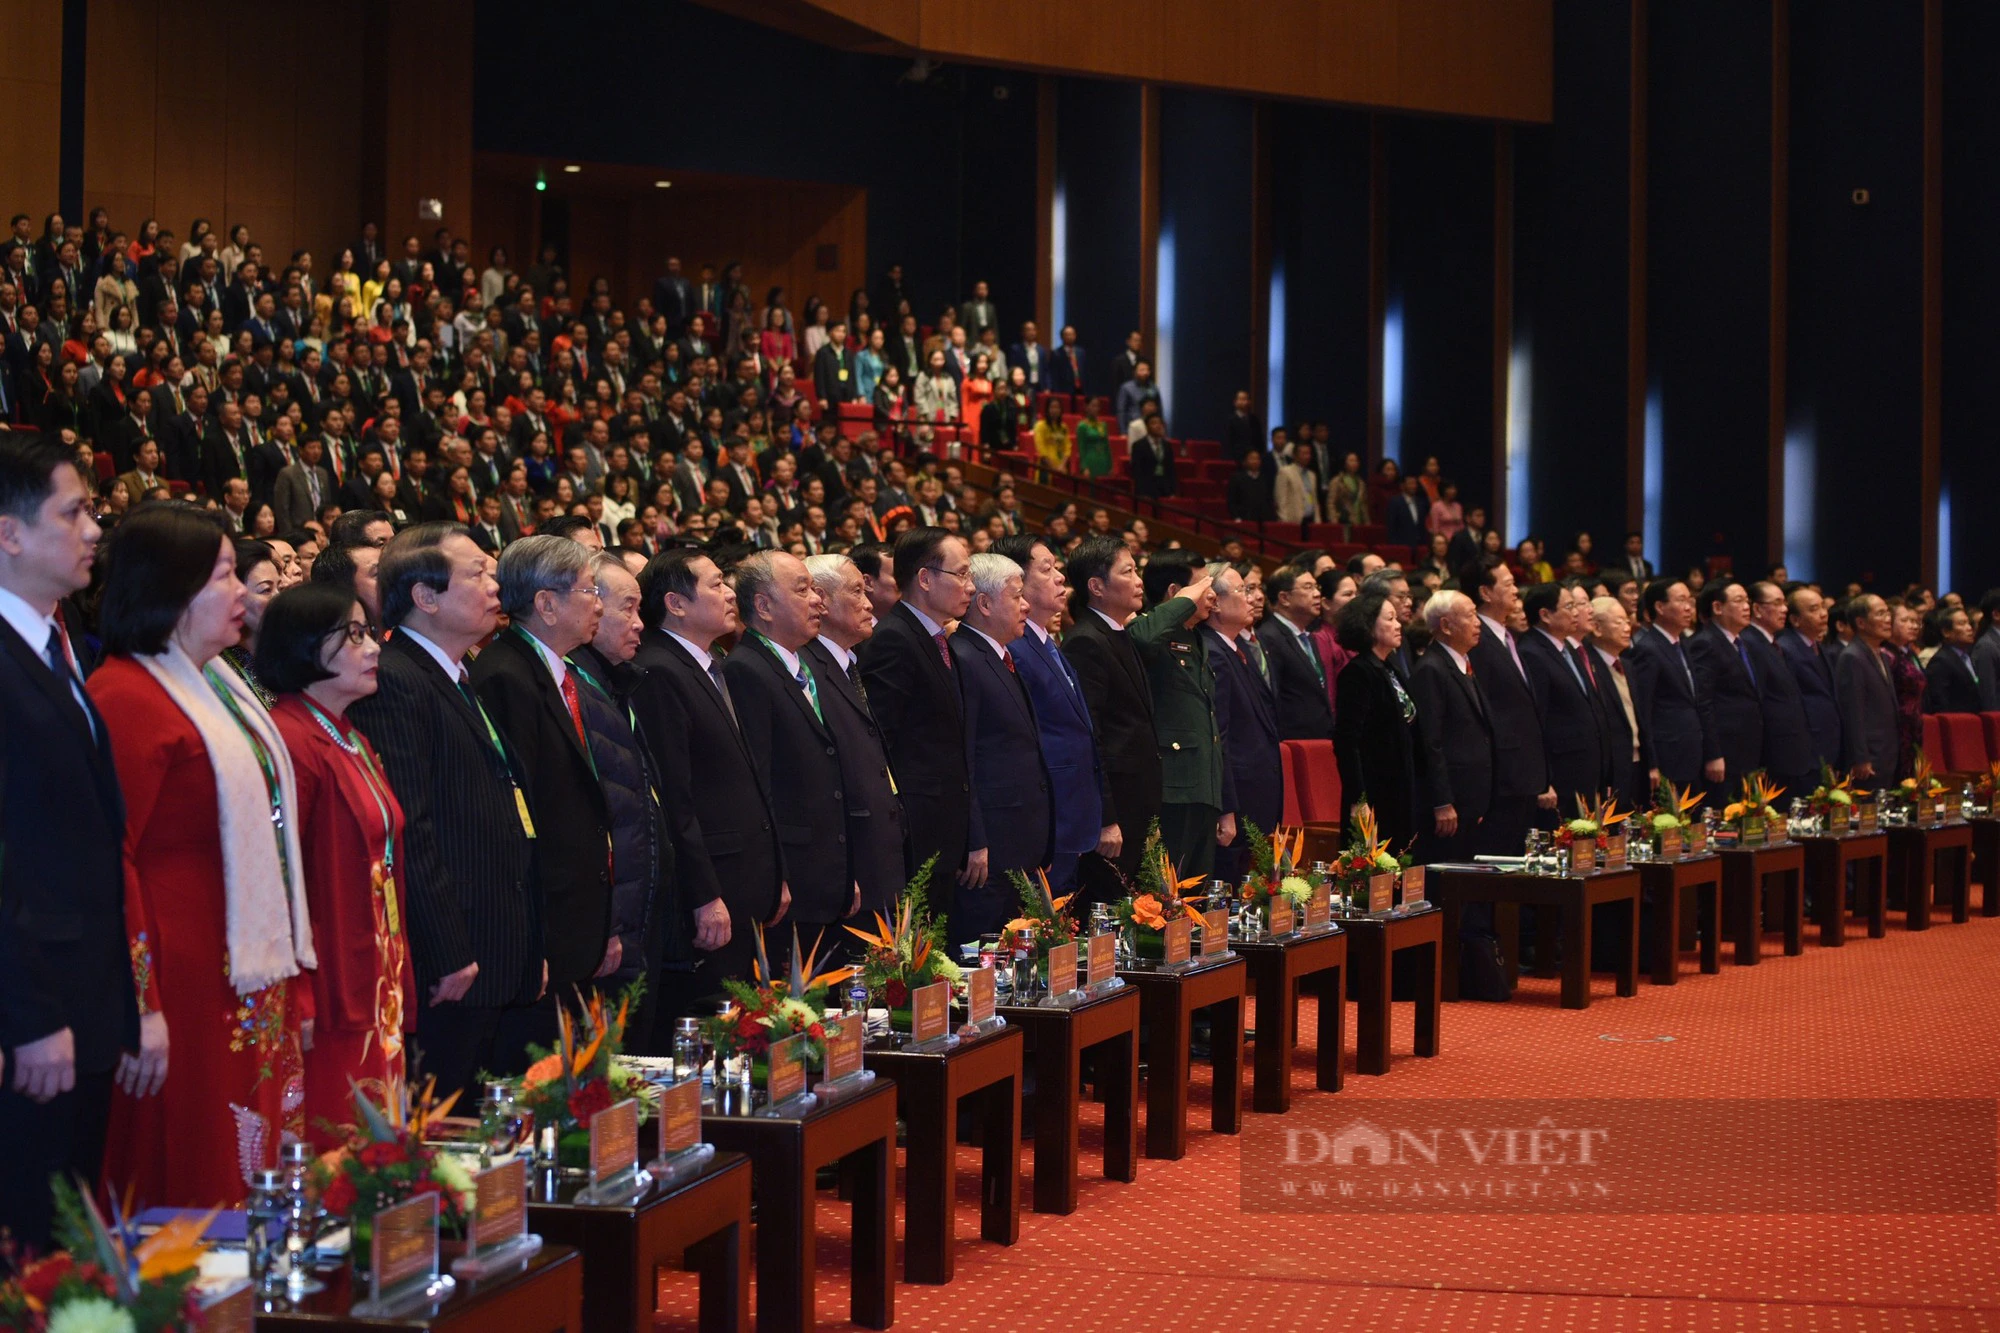 Toàn văn bài phát biểu của Tổng Bí thư Nguyễn Phú Trọng tại Đại hội đại biểu toàn quốc Hội NDVN lần thứ VIII - Ảnh 3.